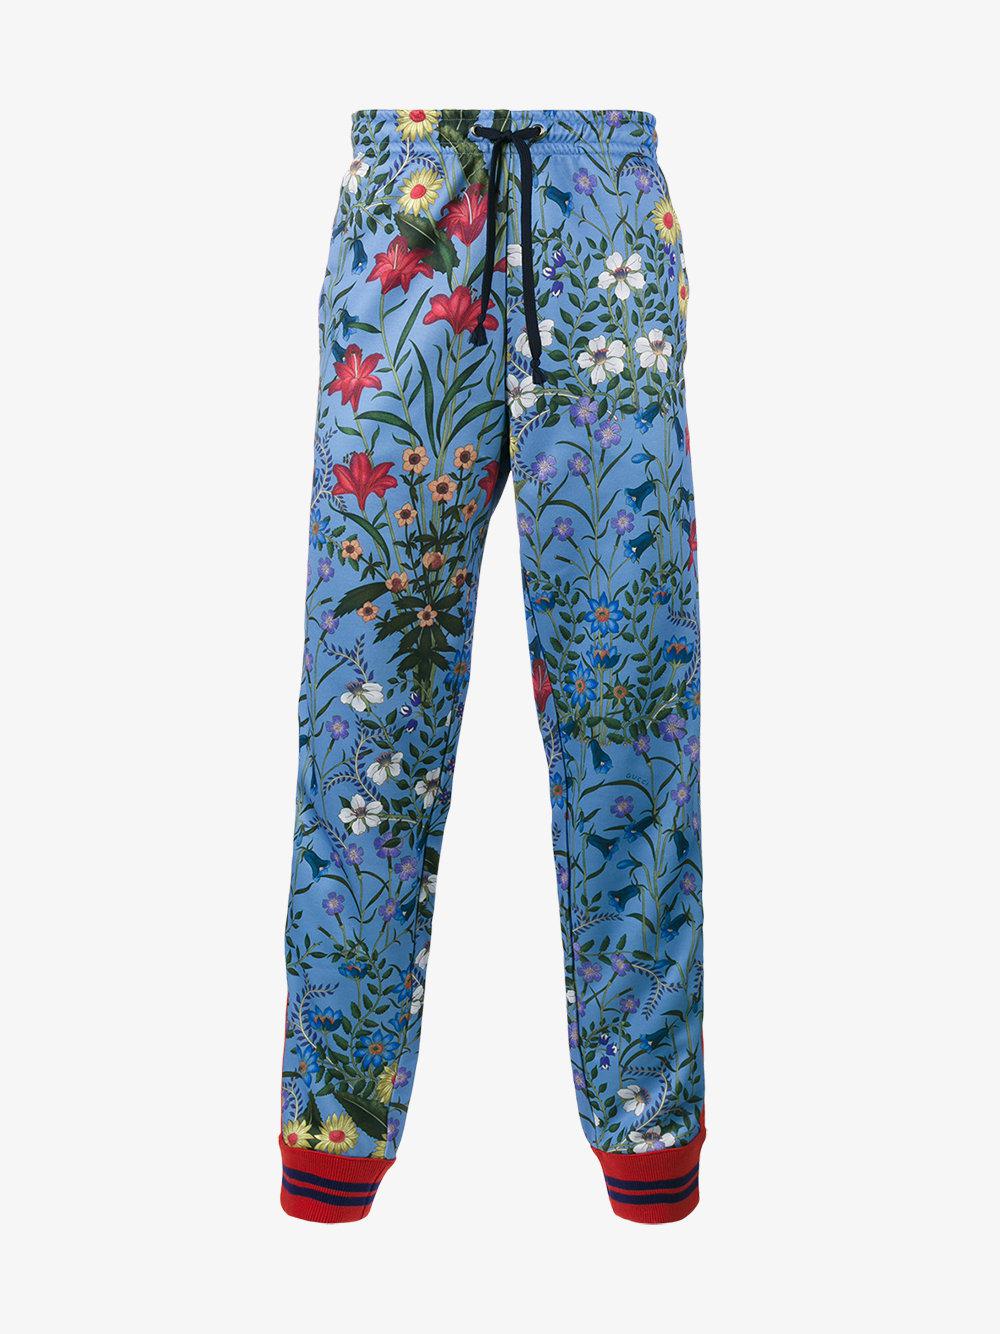 tæt jeg er tørstig Registrering Gucci Synthetic Floral Jogger Pants in Blue for Men - Lyst